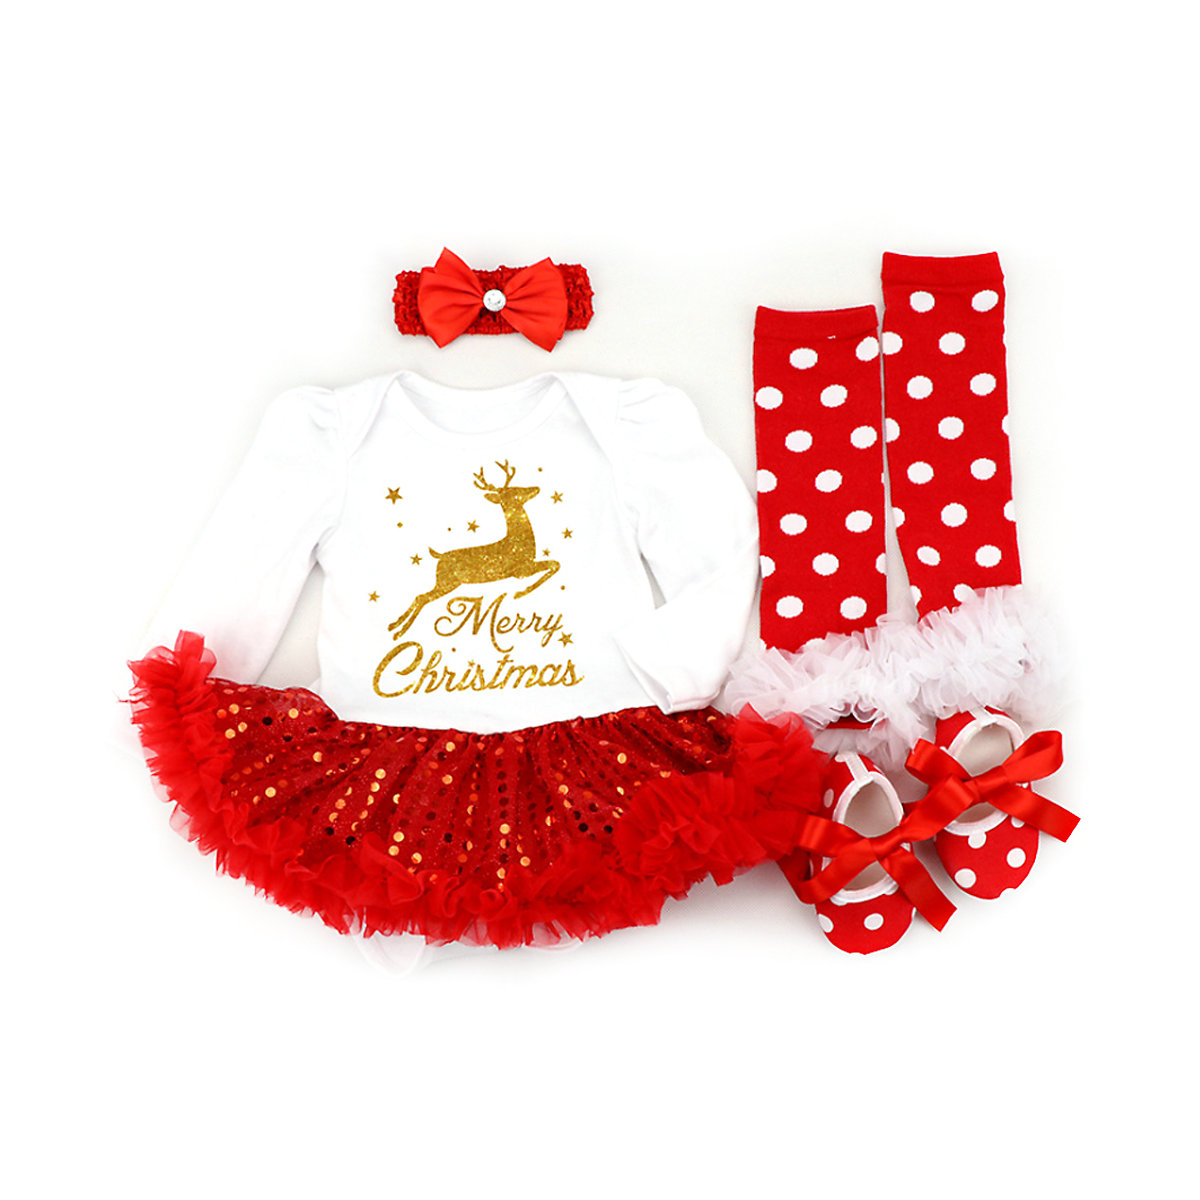 frler frler Weihnachten Outfit Set für Baby Mädchen Anzüge für Mädchen rot